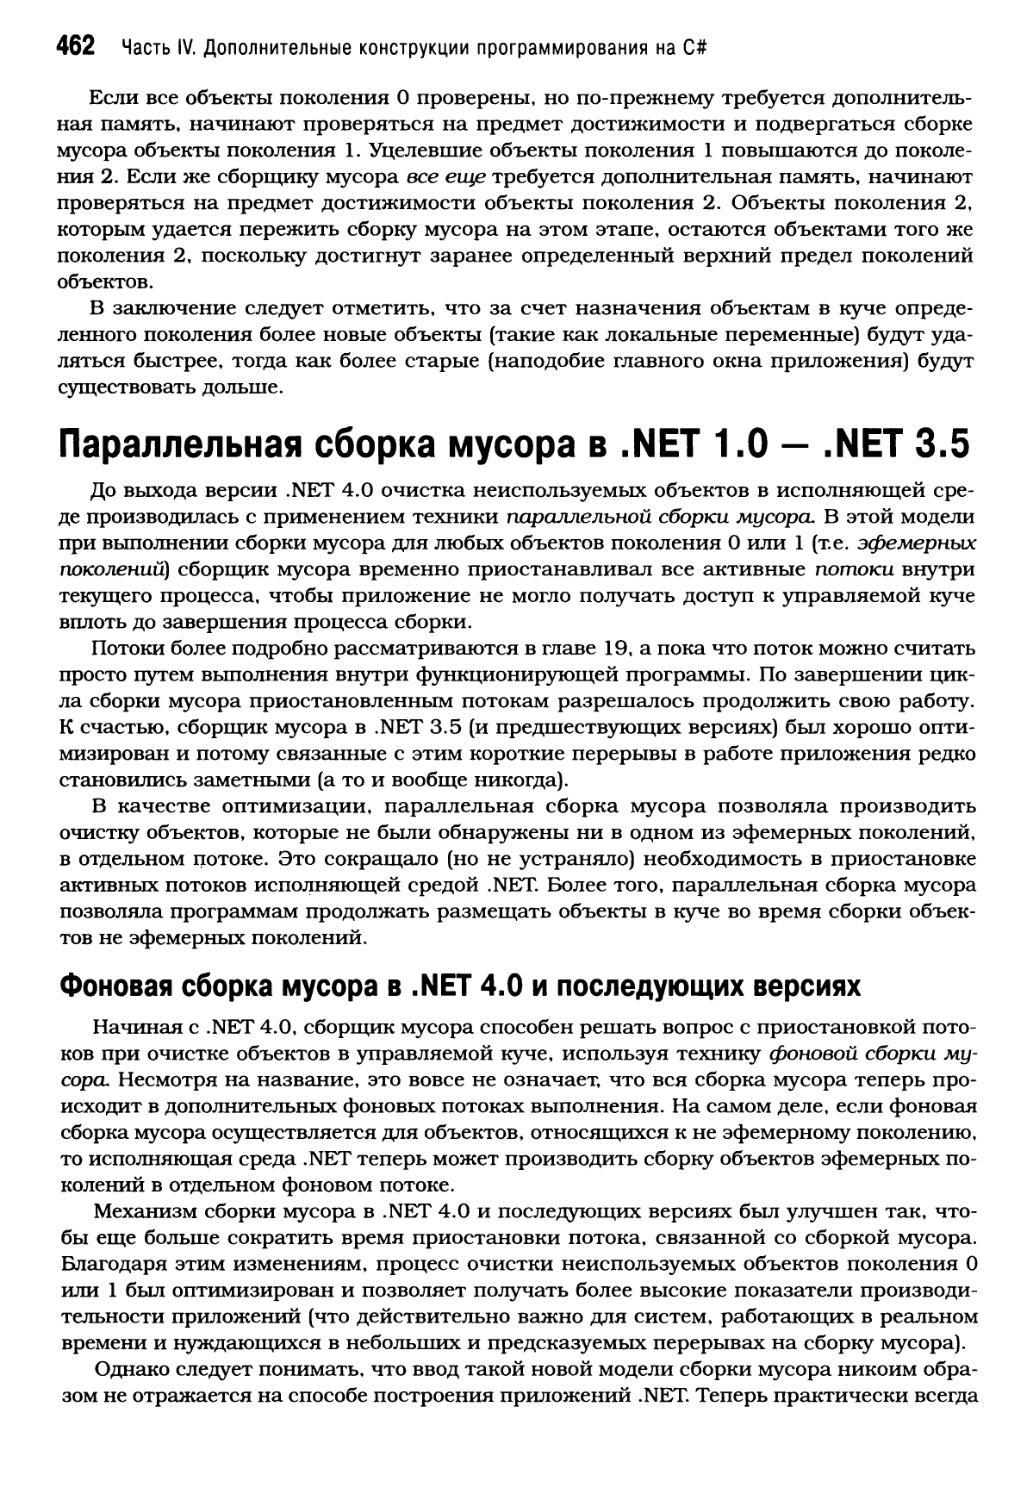 Параллельная сборка мусора в .NET 1.0 — .NET 3.5